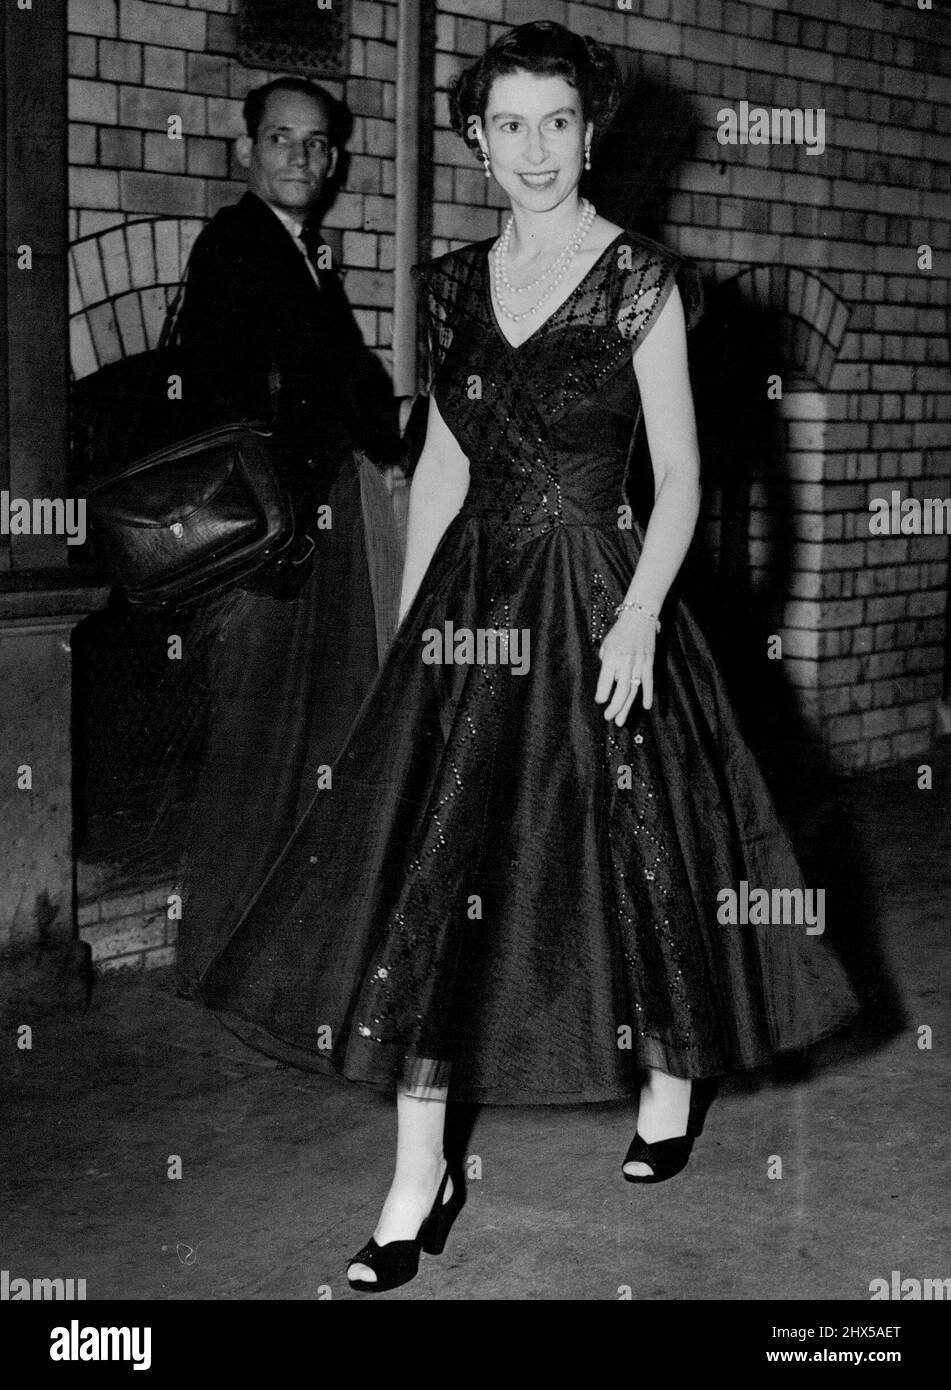 Raggiante in un abito a ballerina in pizzo blu senza maniche, la Regina Elisabetta arriva in una visita a sorpresa al Wyndham's Theatre di Londra per vedere "The Boy Friend". Agosto 11, 1954. (Foto di Daily Mirror). Foto Stock